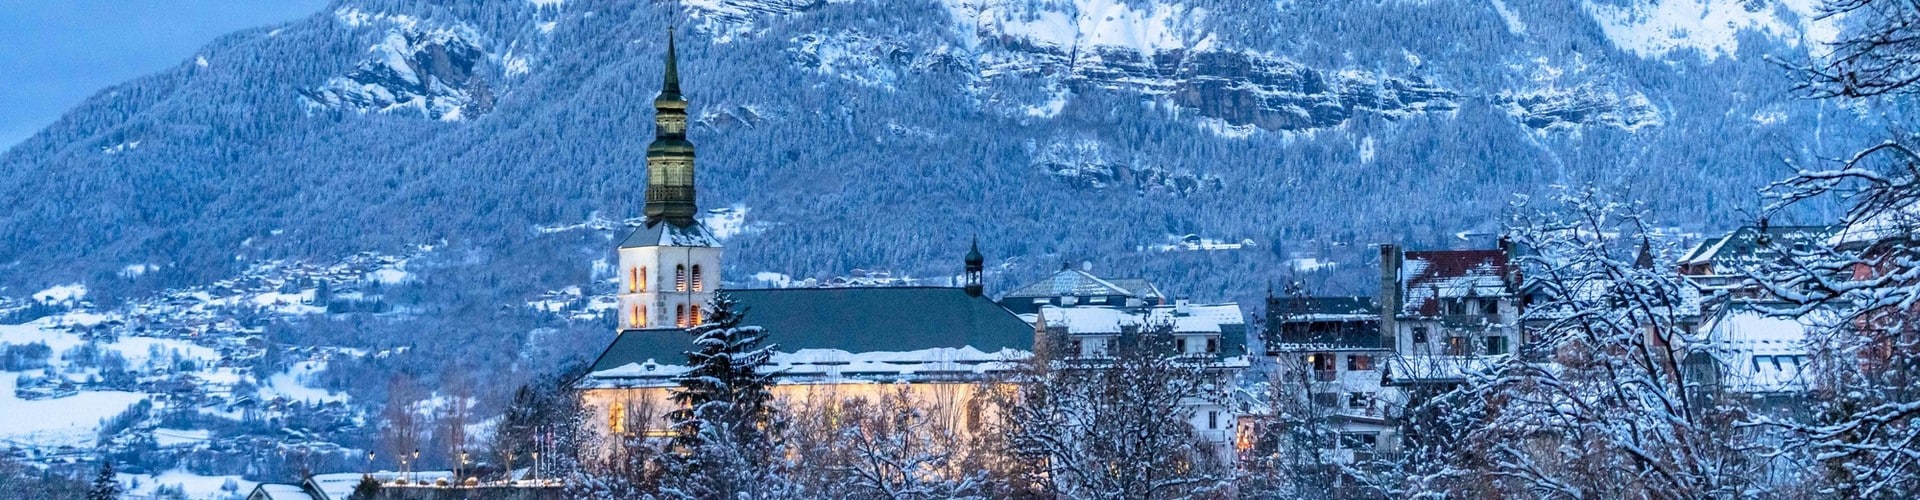 La Haute-Savoie à Saint-Gervais-les-Bains en hiver